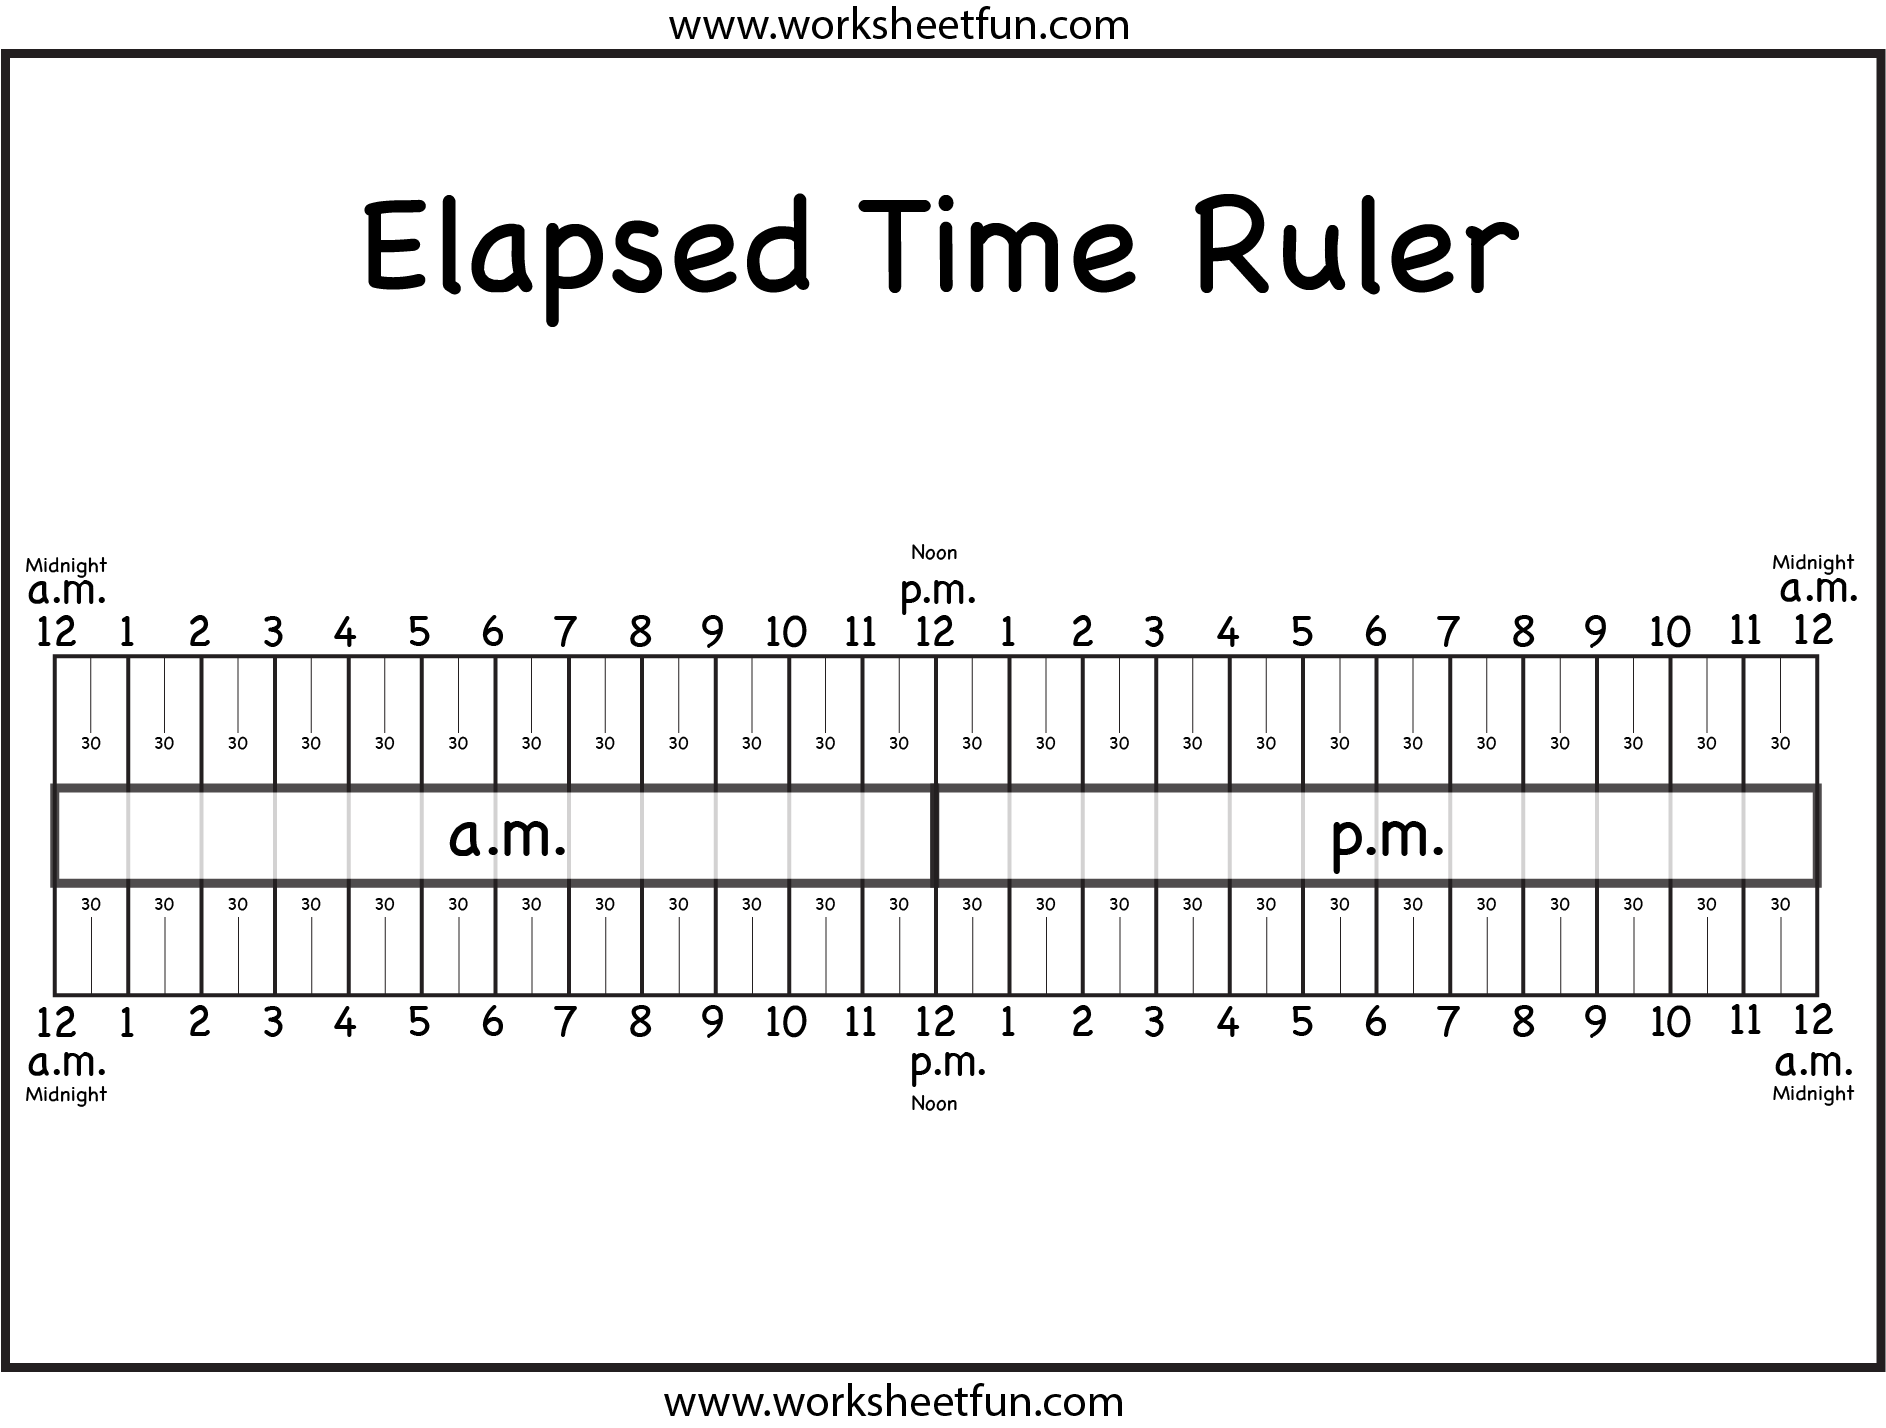 Elapsed Time Ruler